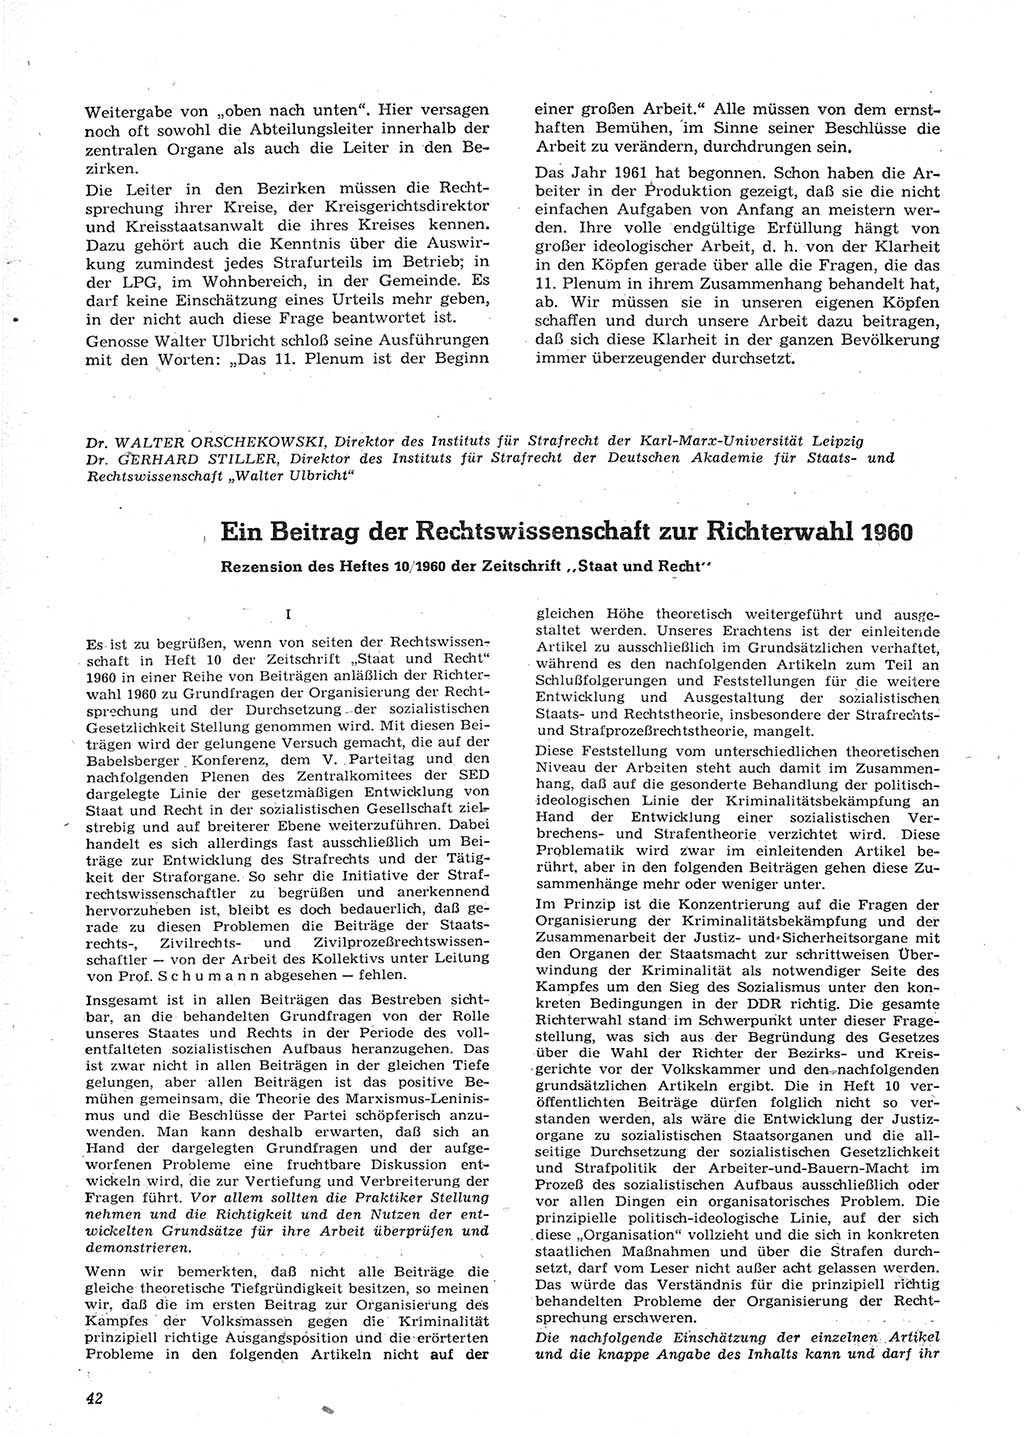 Neue Justiz (NJ), Zeitschrift für Recht und Rechtswissenschaft [Deutsche Demokratische Republik (DDR)], 15. Jahrgang 1961, Seite 42 (NJ DDR 1961, S. 42)